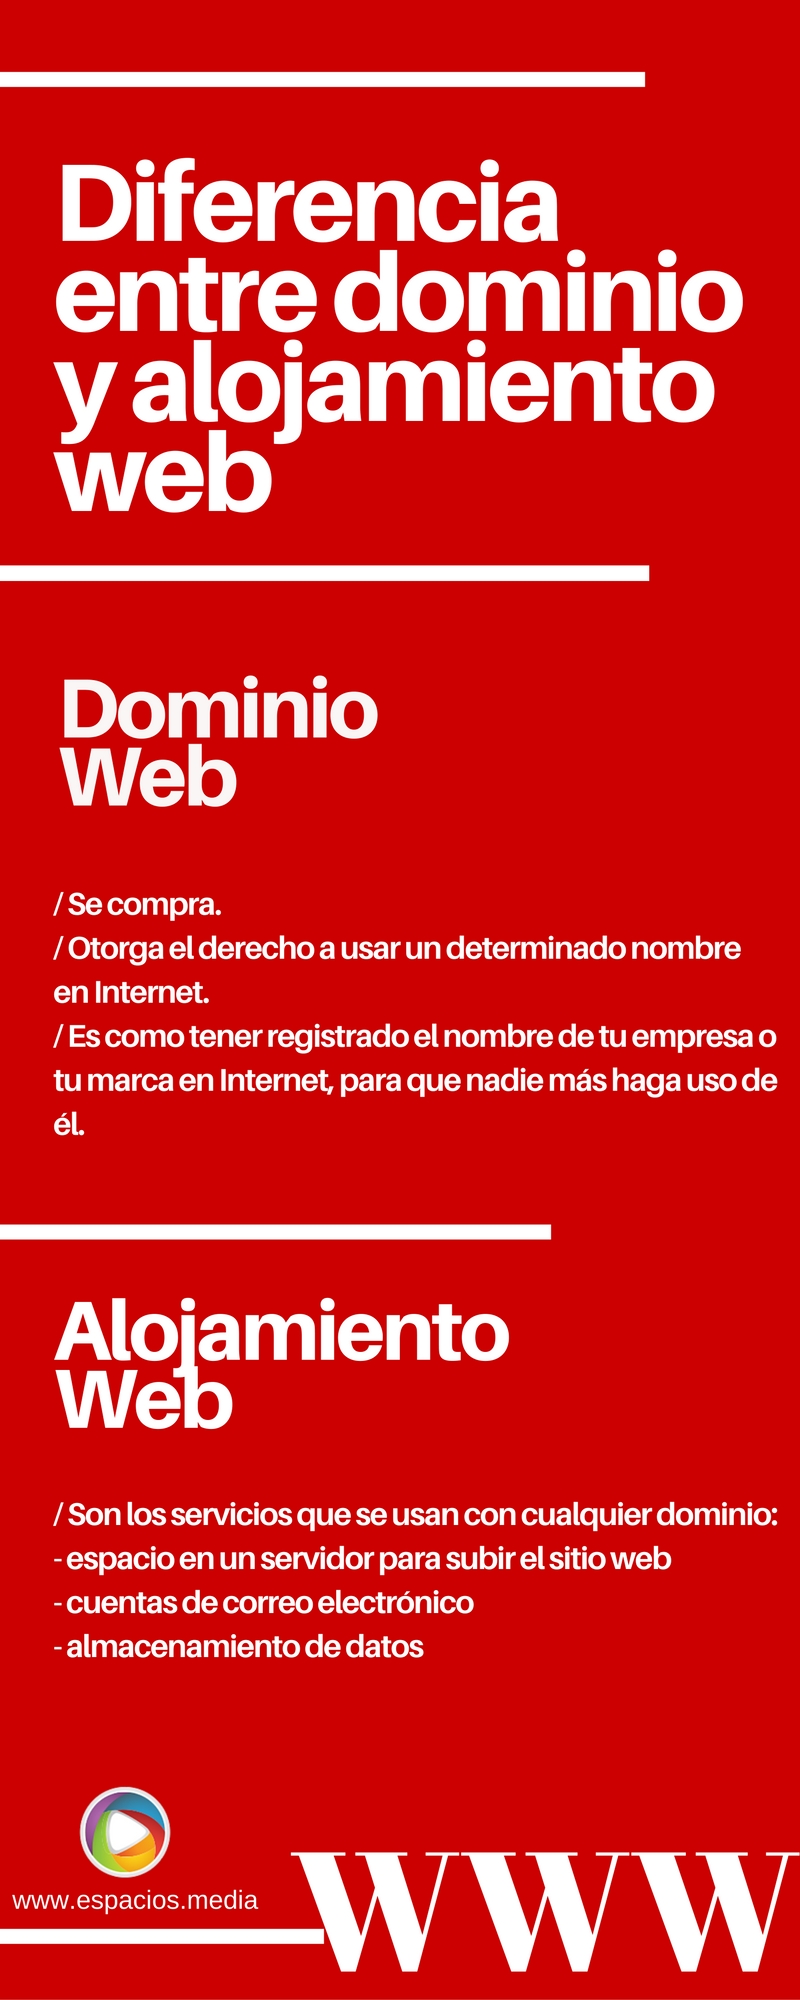 diferencia-entre-dominio-web-y-alojamiento-web